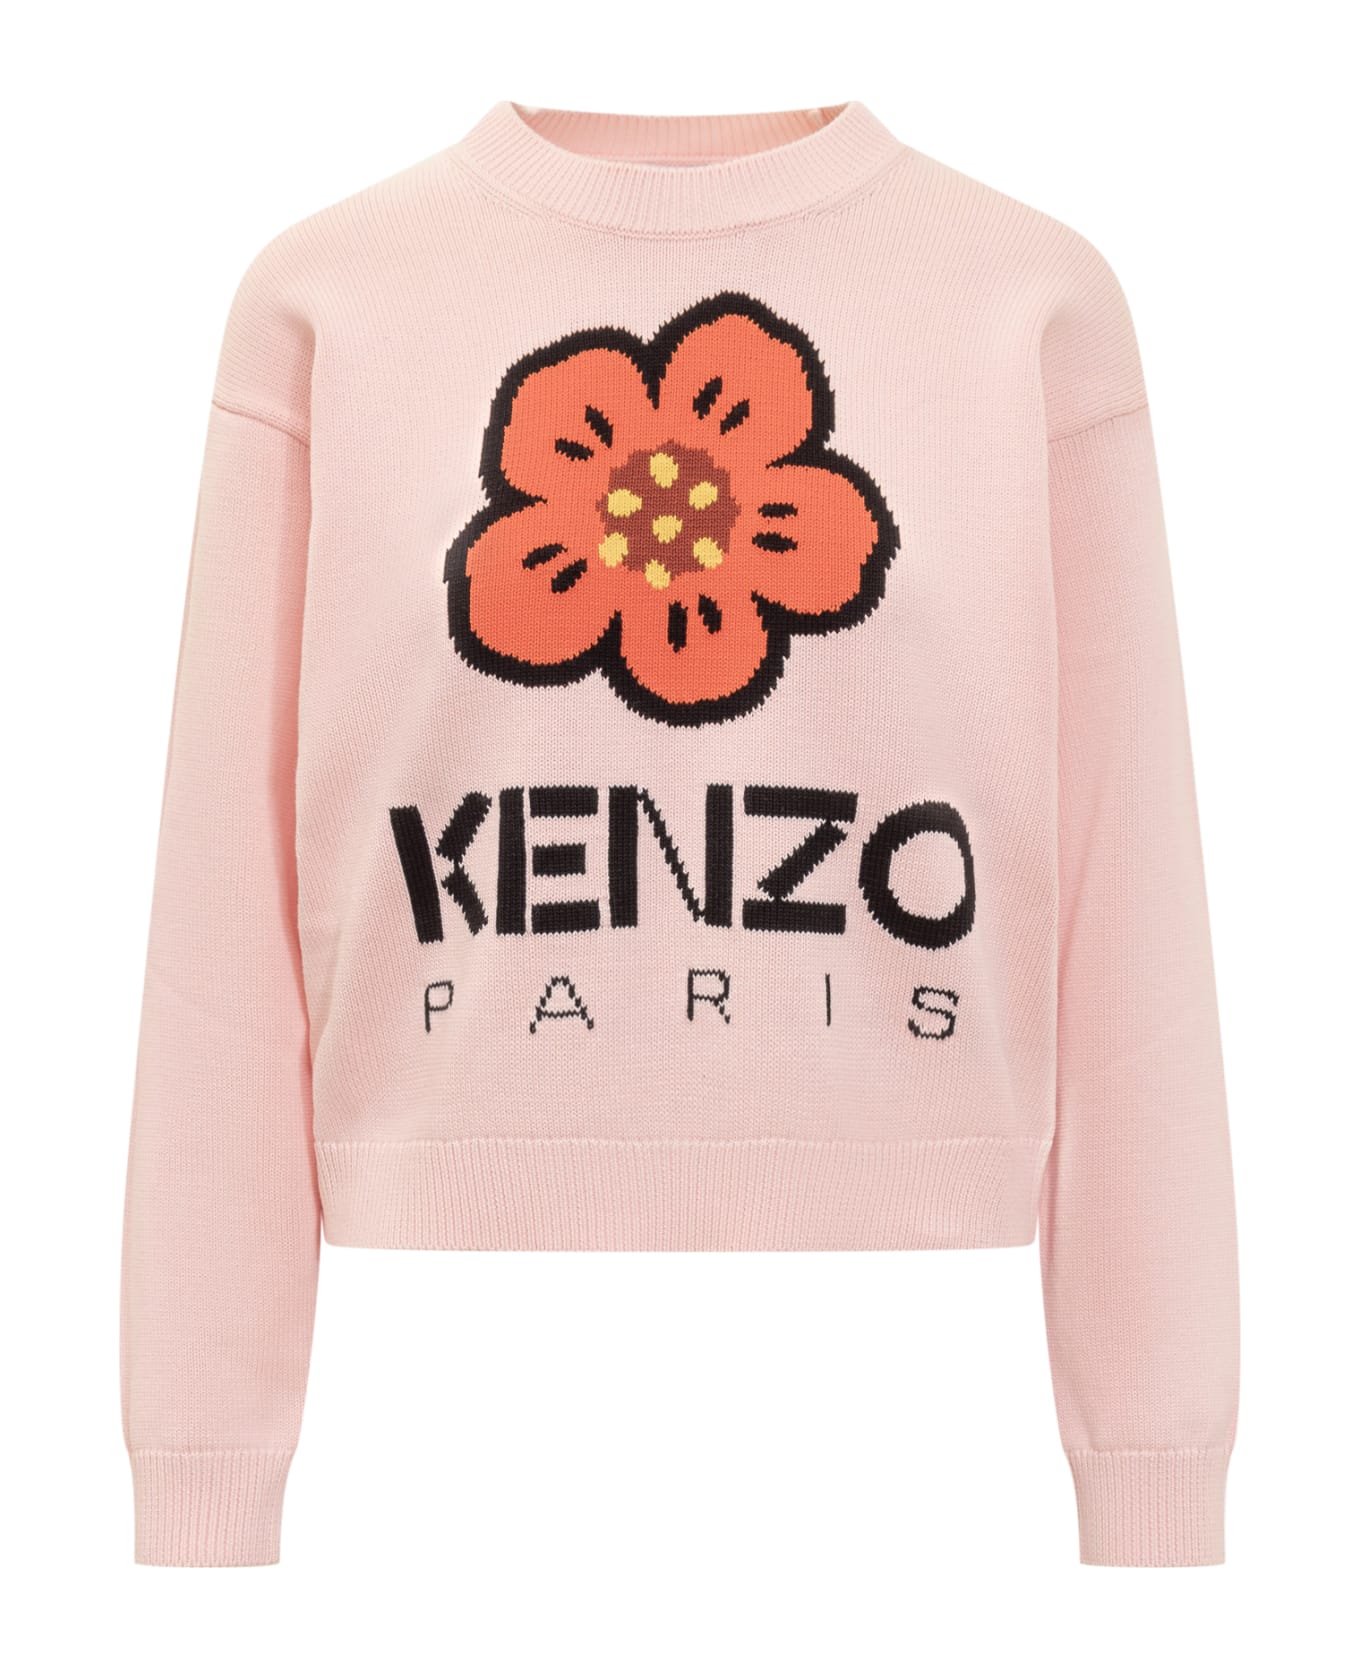 Kenzo Boke Flower Sweater - Faded pink フリース